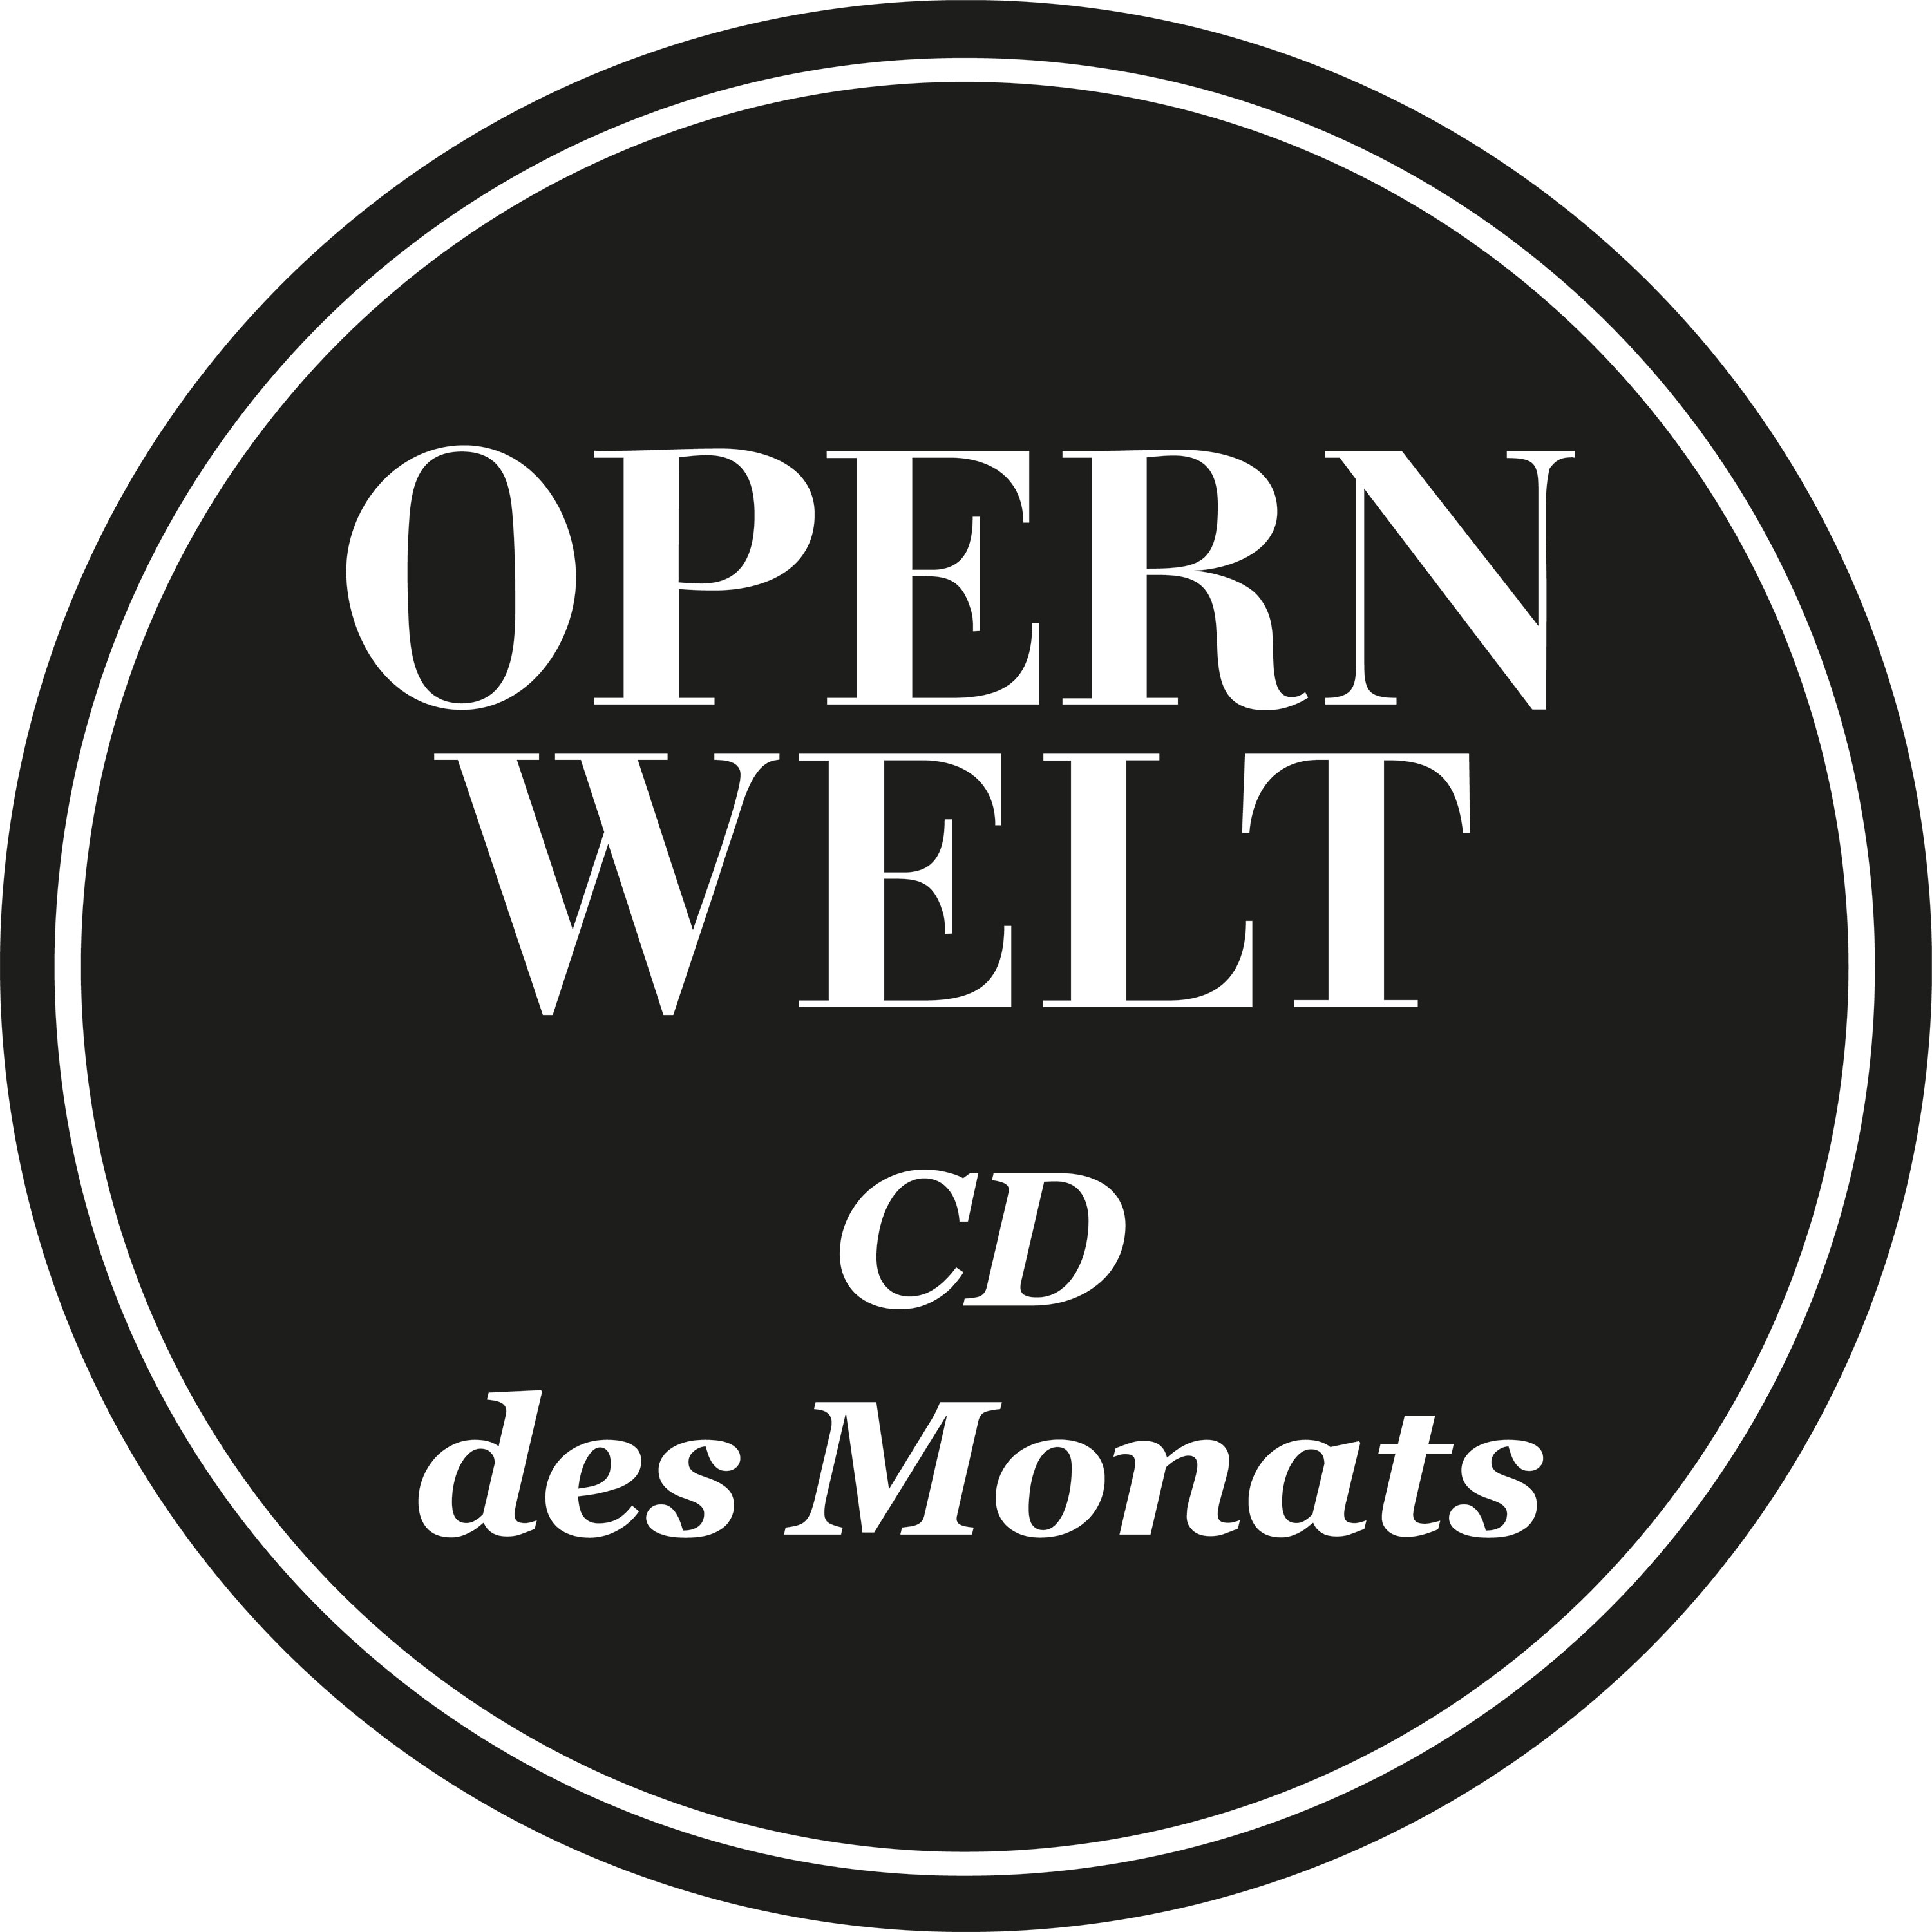 Operwelt: 'CD Des Monats' (April, 2021)